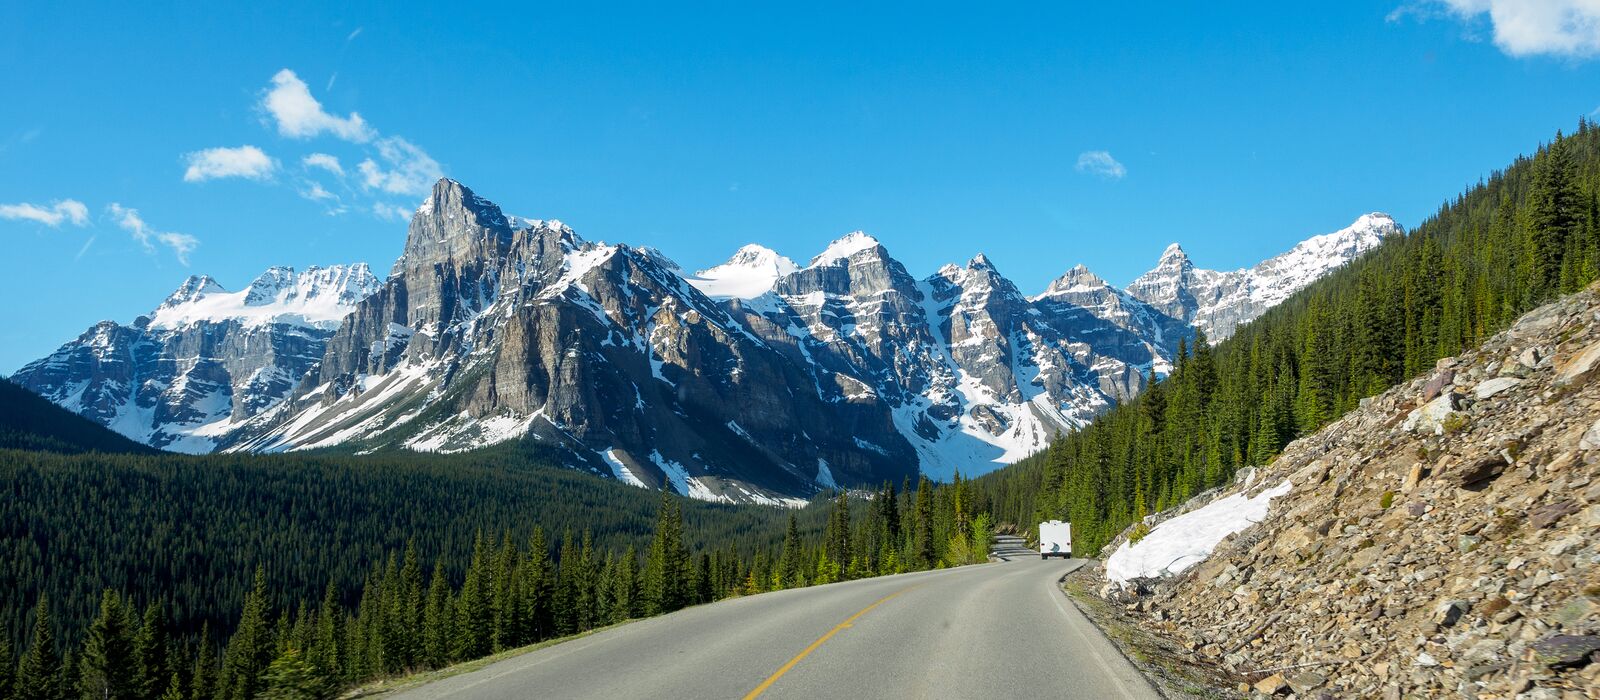 Blick über die Straße im Tal der zehn Gipfel im Banff-Nationalpark, Alberta